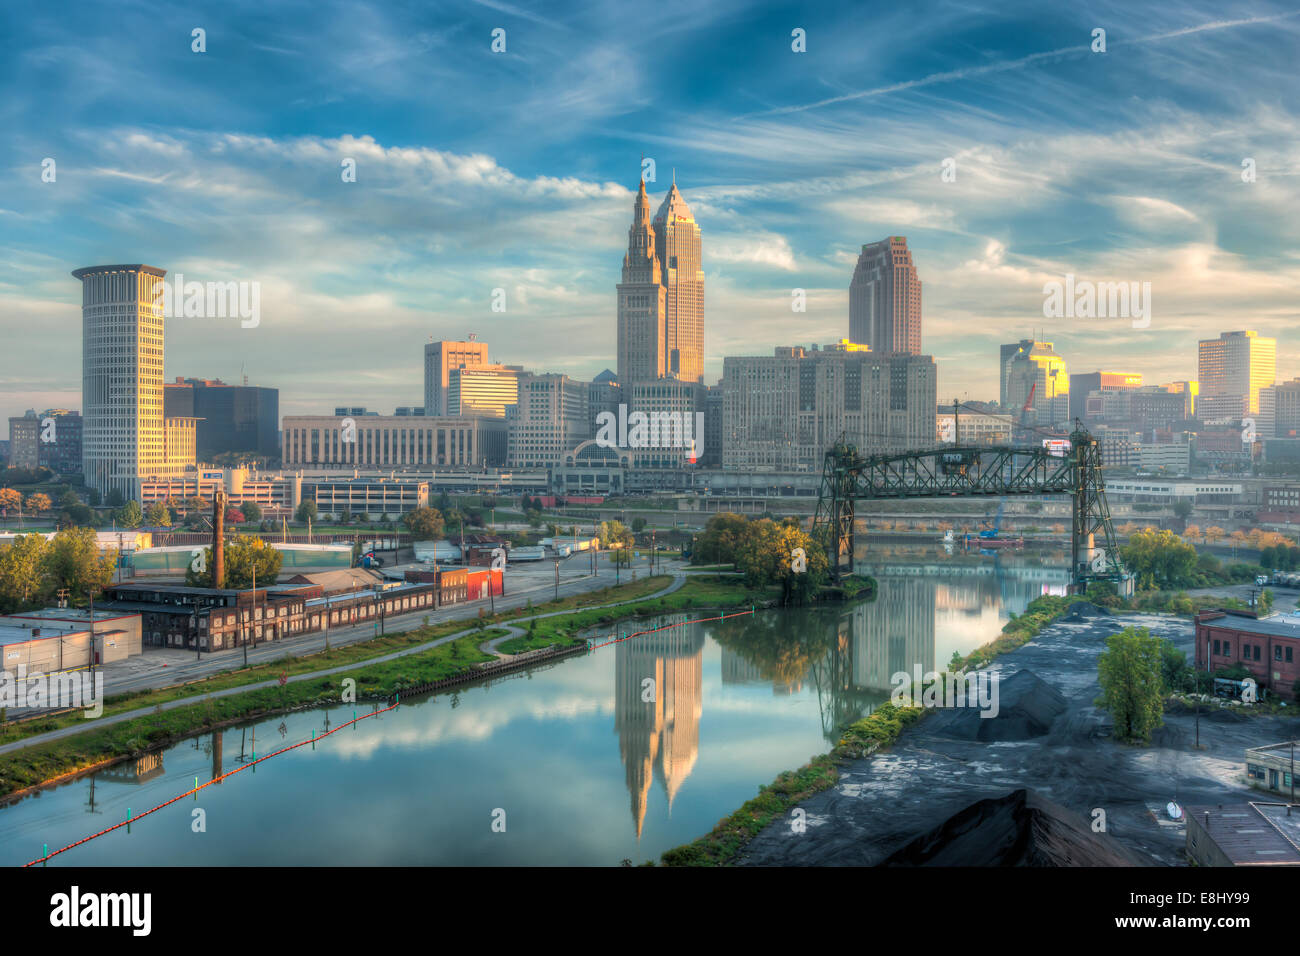 Der Terminal Tower und Schlüssel-Turm, am frühen Morgen Licht spiegeln sich in der Cuyahoga River in Cleveland, Ohio. Stockfoto